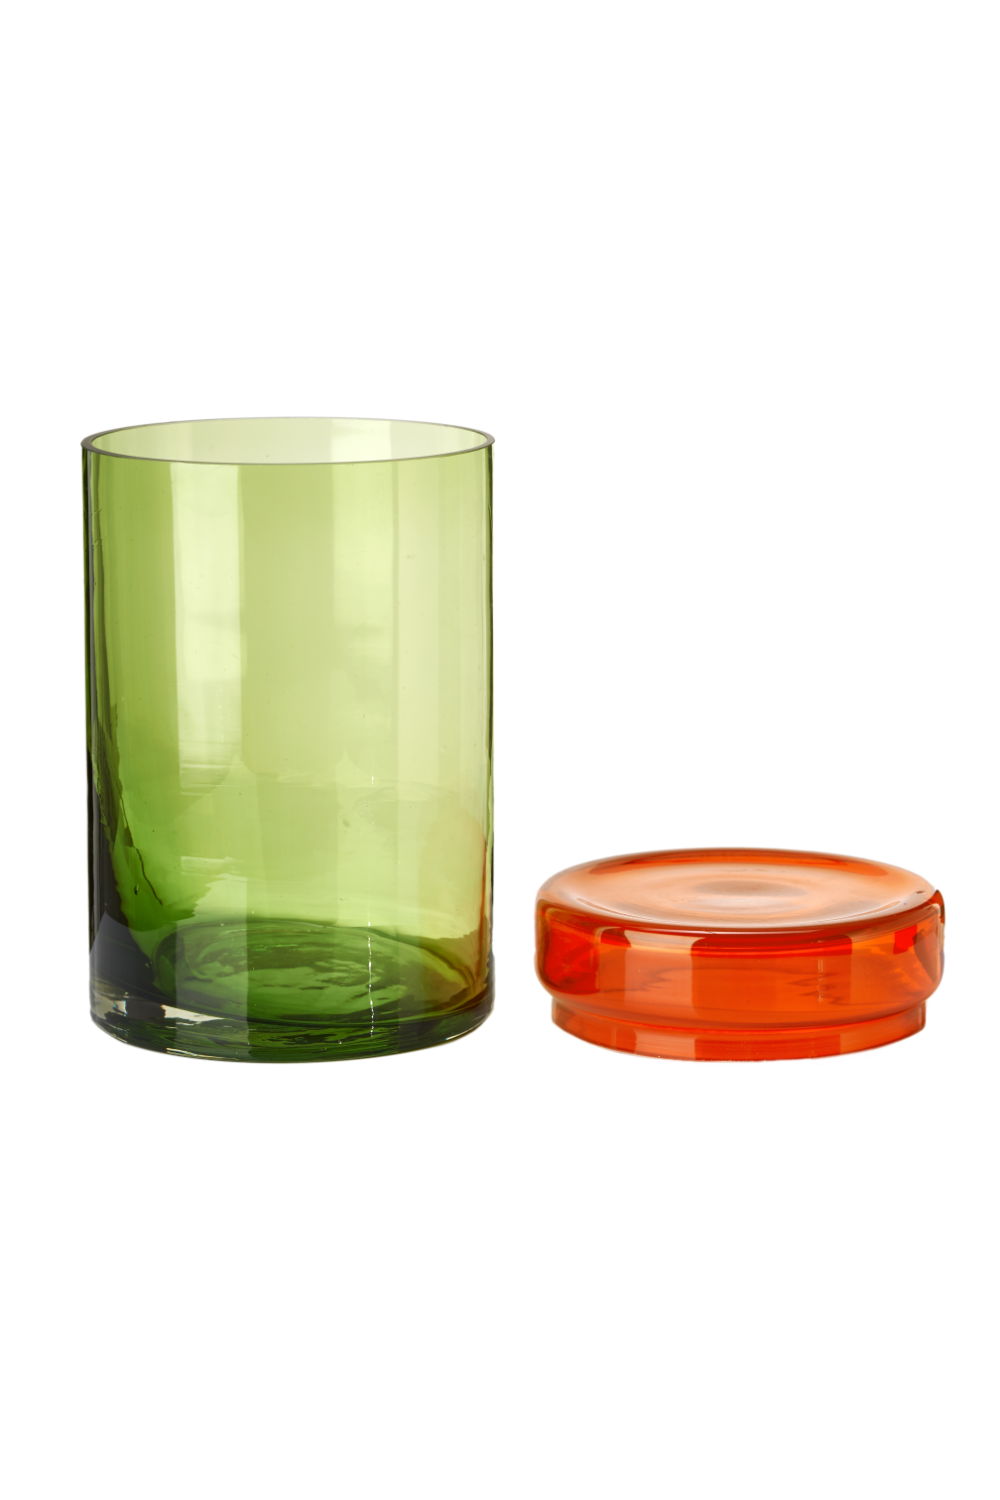 Multi-Colored Glass Caps and Jars | Pols Potten | Oroa.com